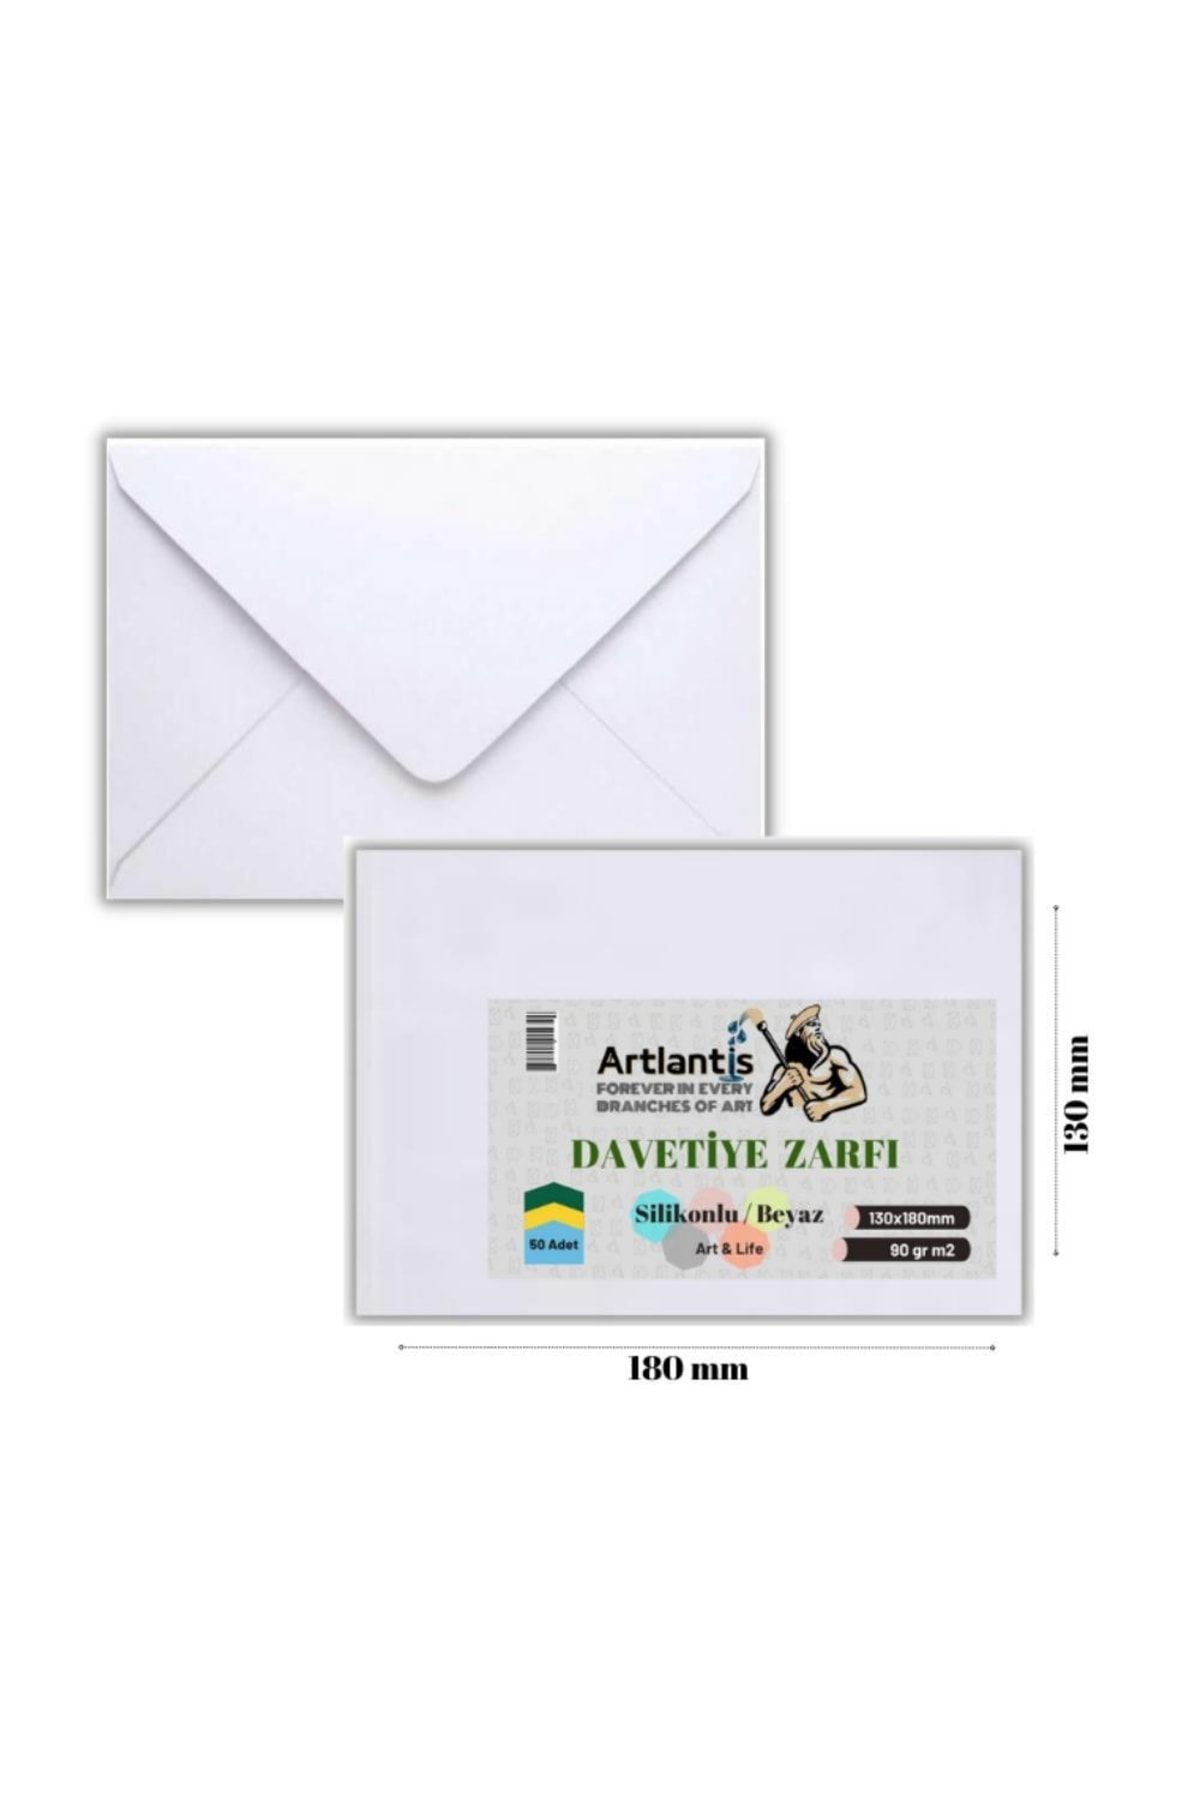 Artlantis Zarf 13x18 Davetiye Zarfı Beyaz 50'li 1 Paket Beyaz Davetiye Zarfı 13*18 50'li 1 Paket